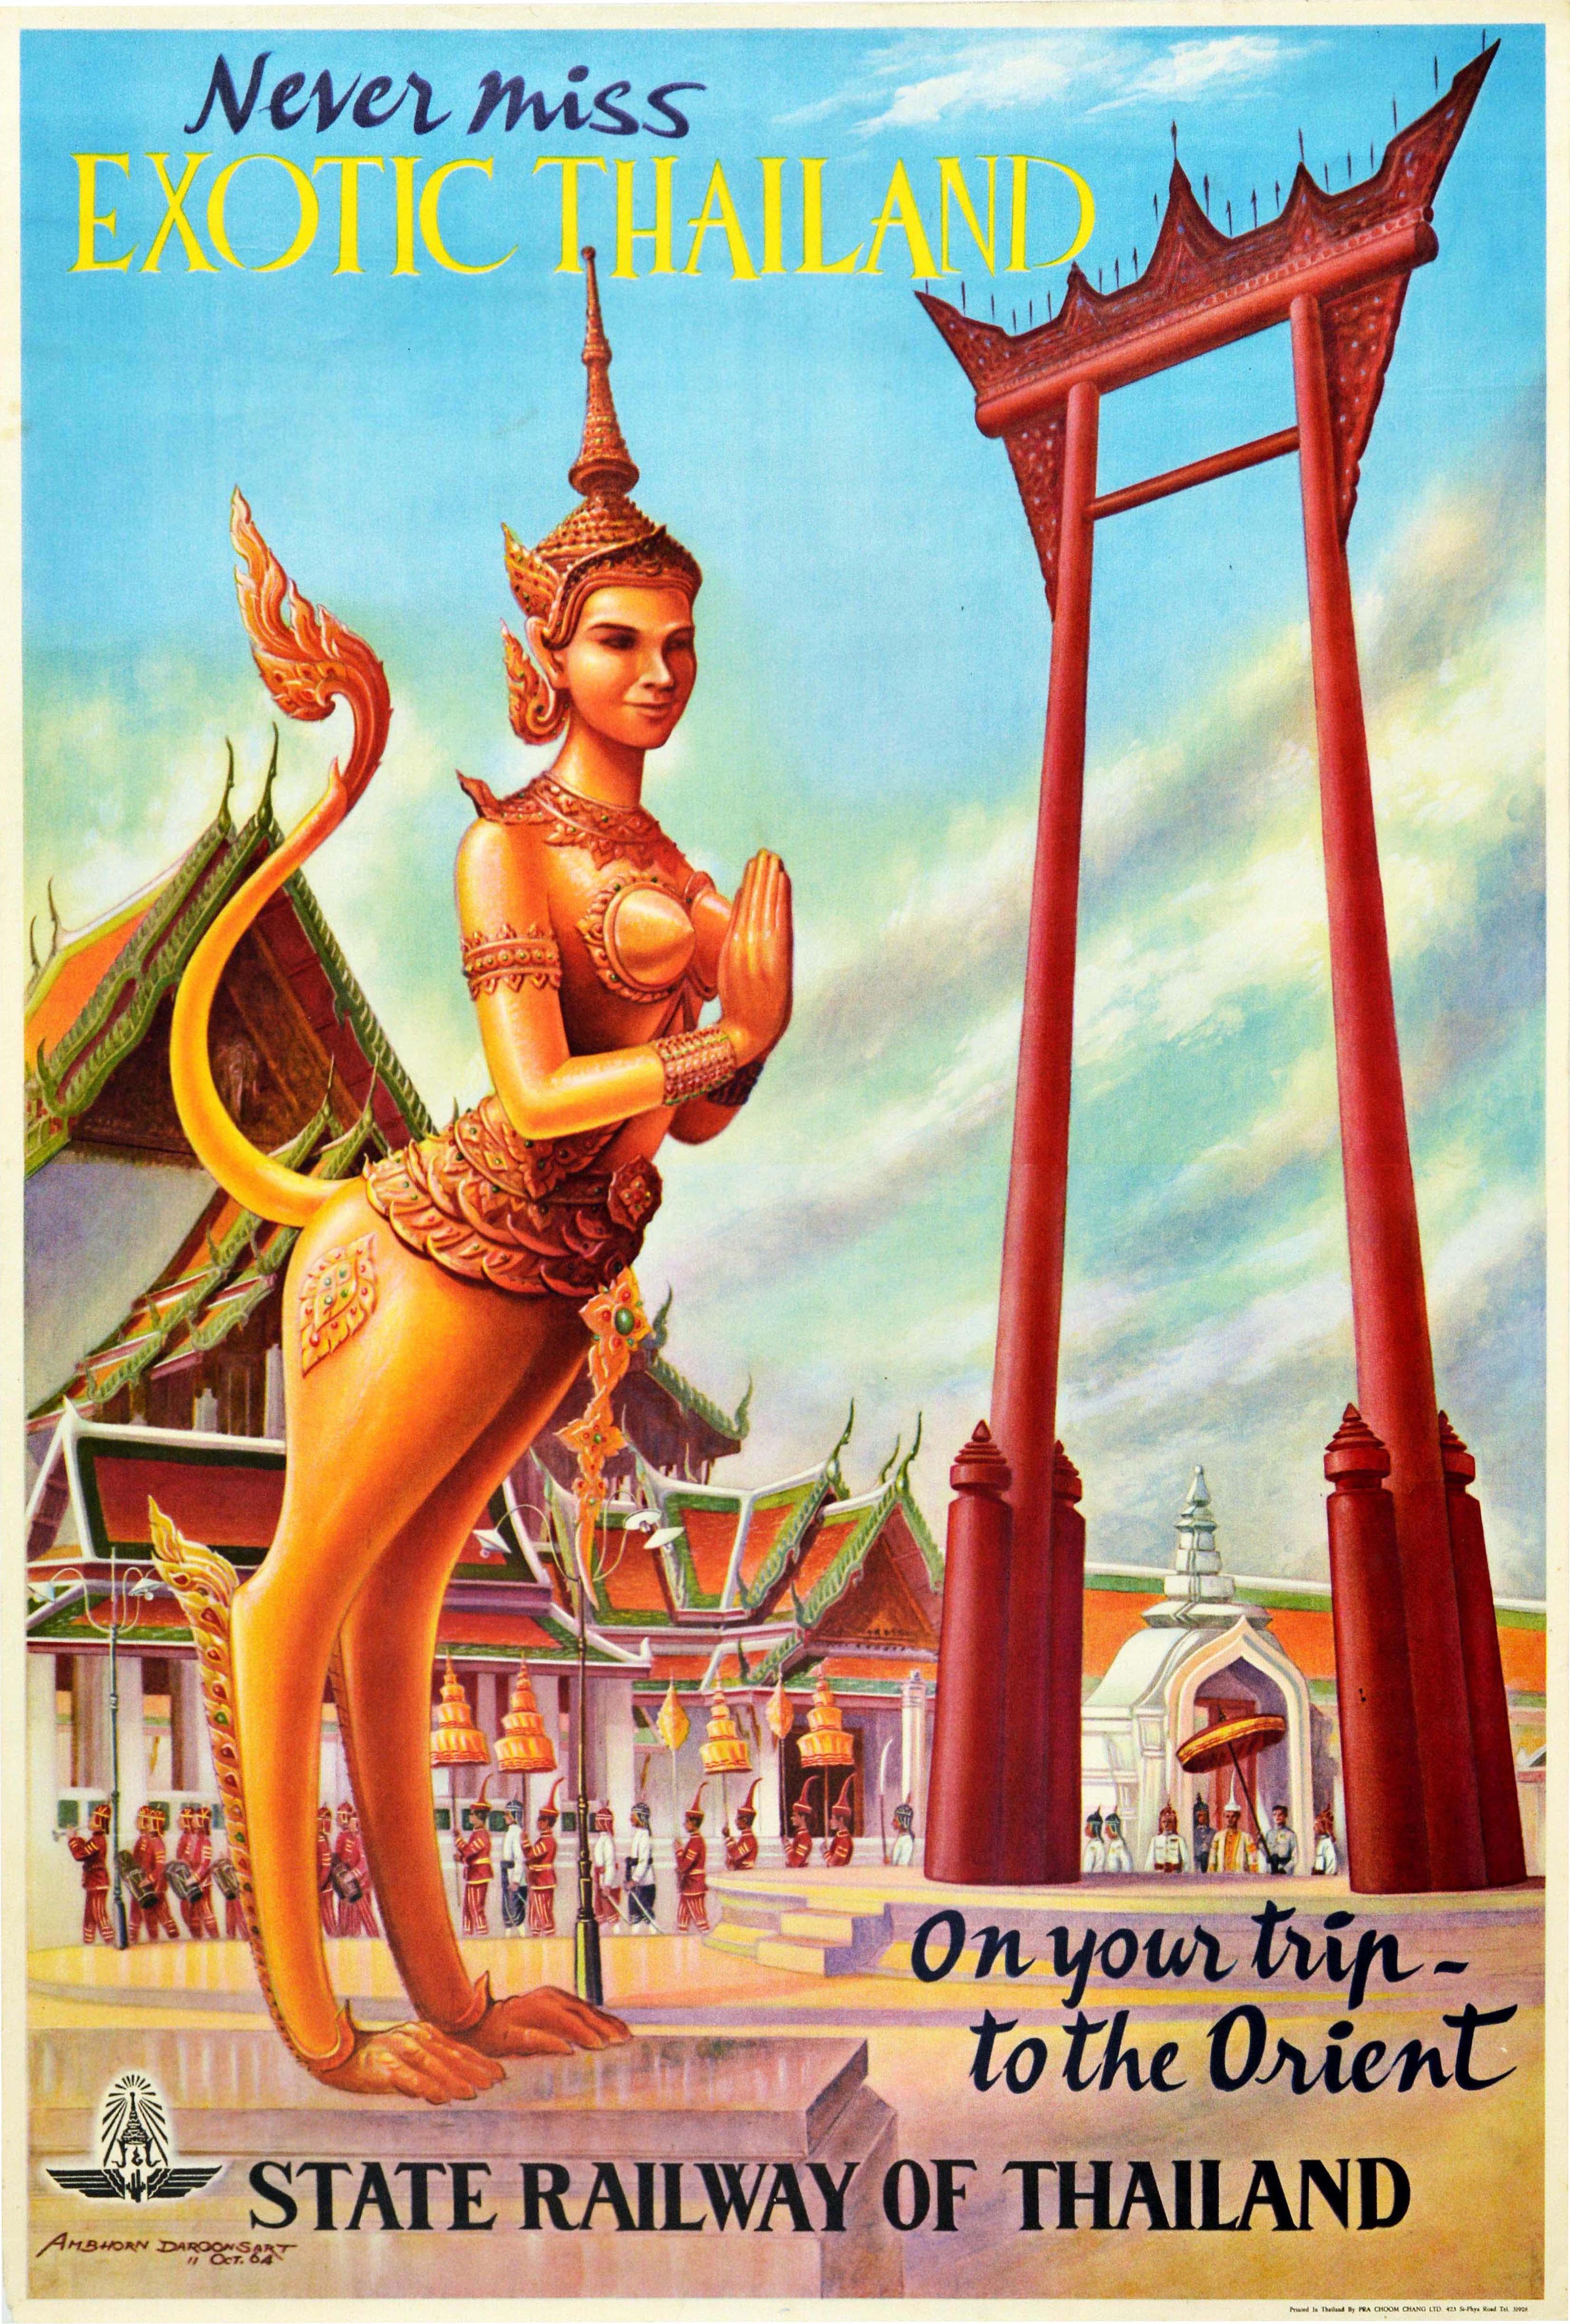 Affiche de voyage originale émise par les chemins de fer thaïlandais - Ne manquez jamais la Thaïlande exotique lors de votre voyage en Orient - avec un dessin coloré montrant une statue dorée devant une procession de personnes marchant près d'un